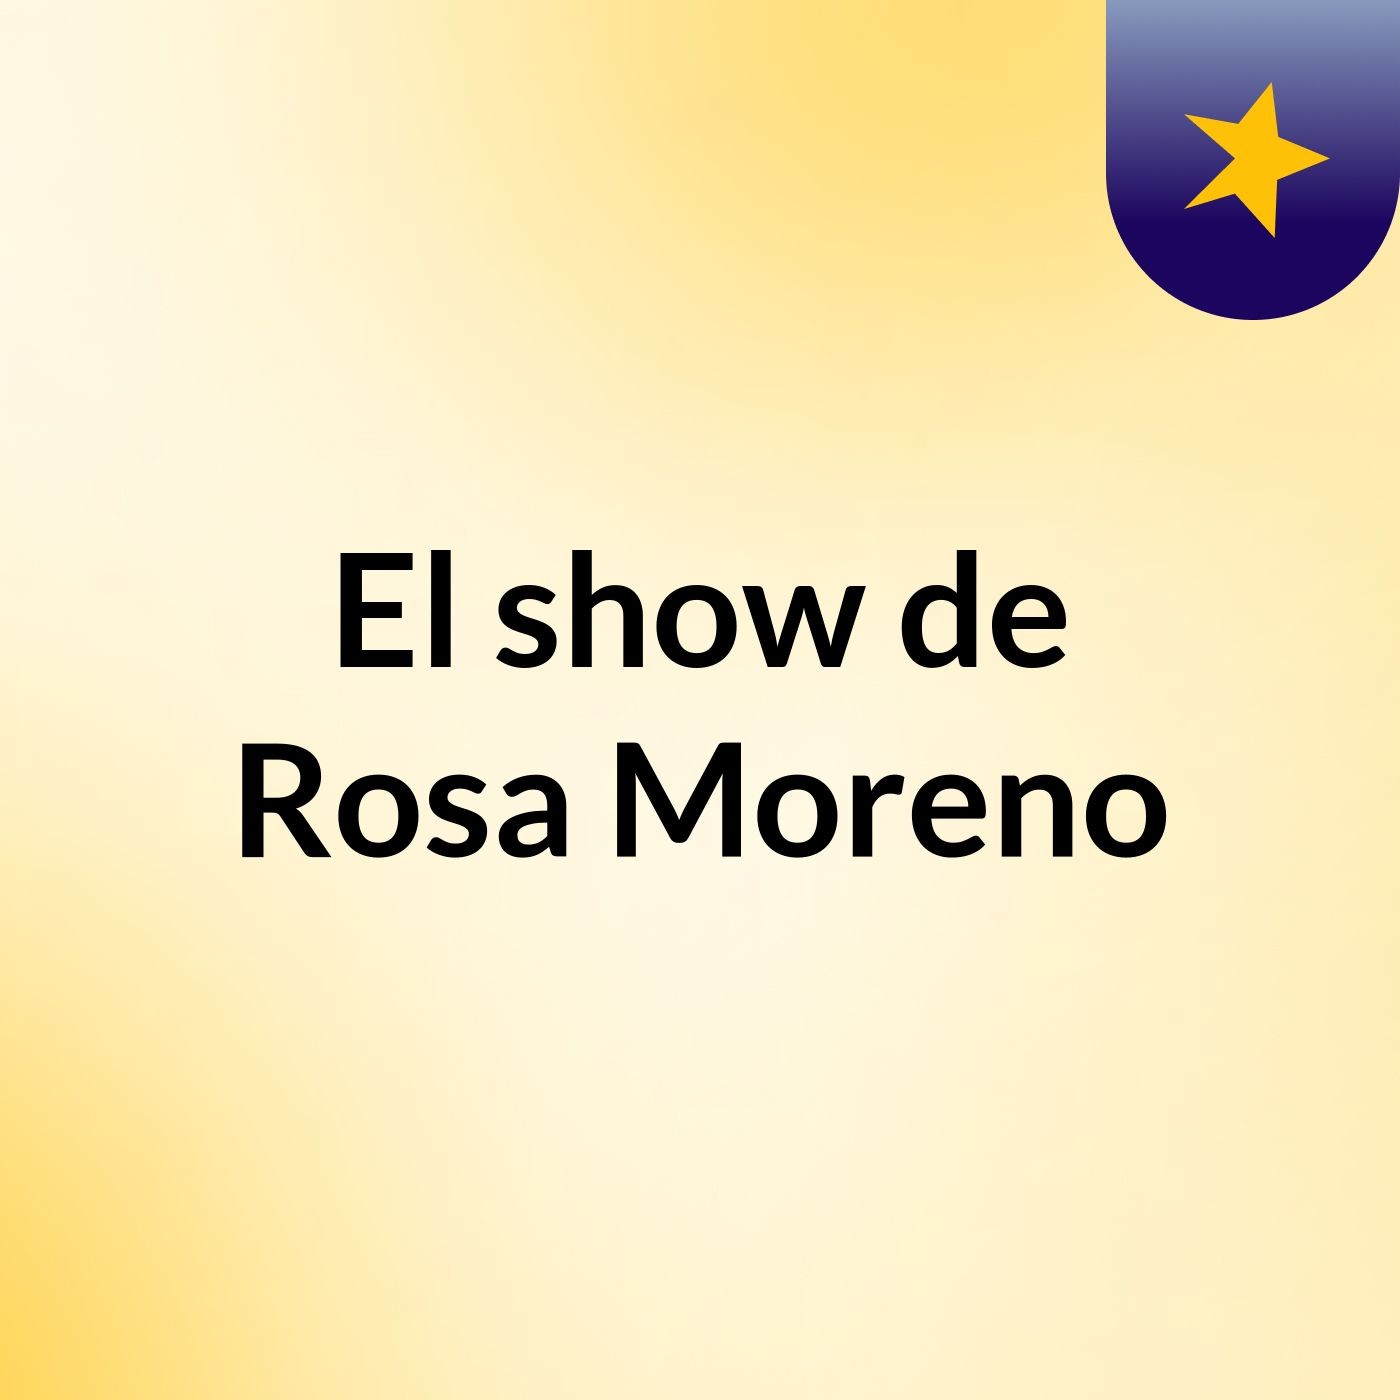 Episodio 11 - El show de Rosa Moreno